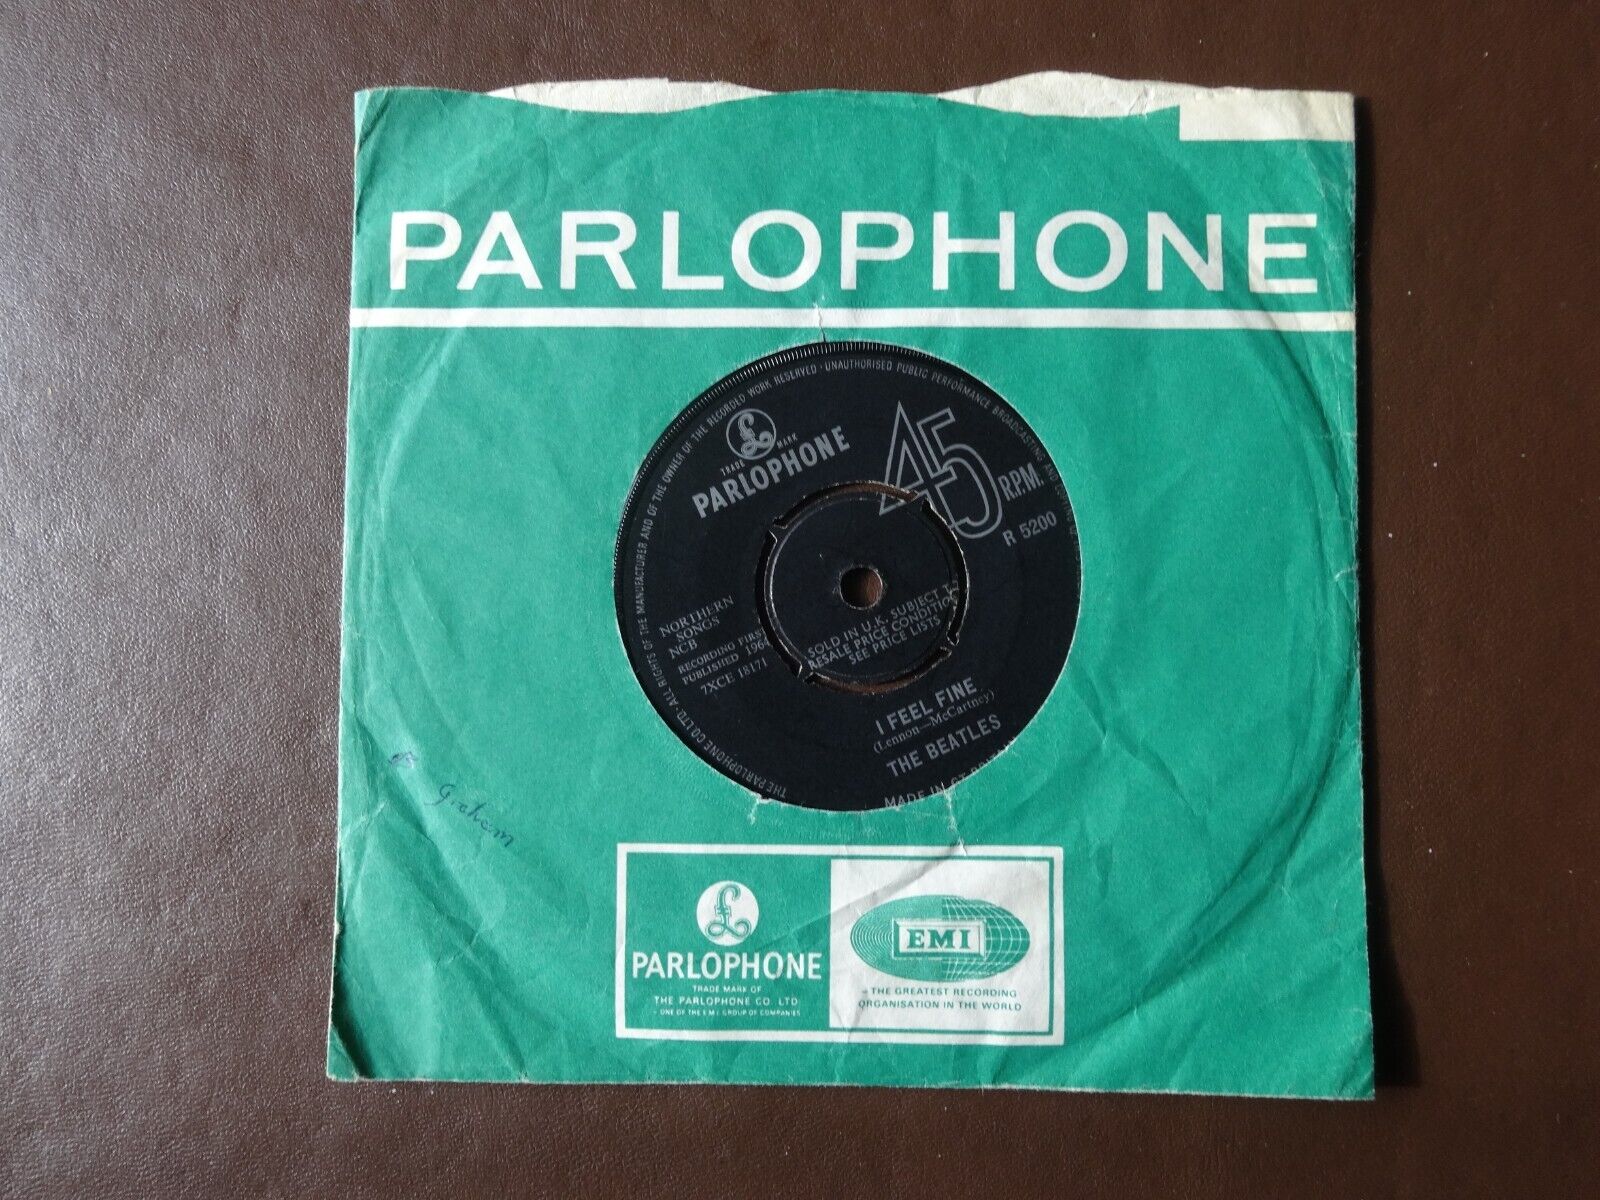 39 BEATLES 1964 UK Vinyl 1st Pressing Parlophone single 'I FEEL FINE' VG+/VG+